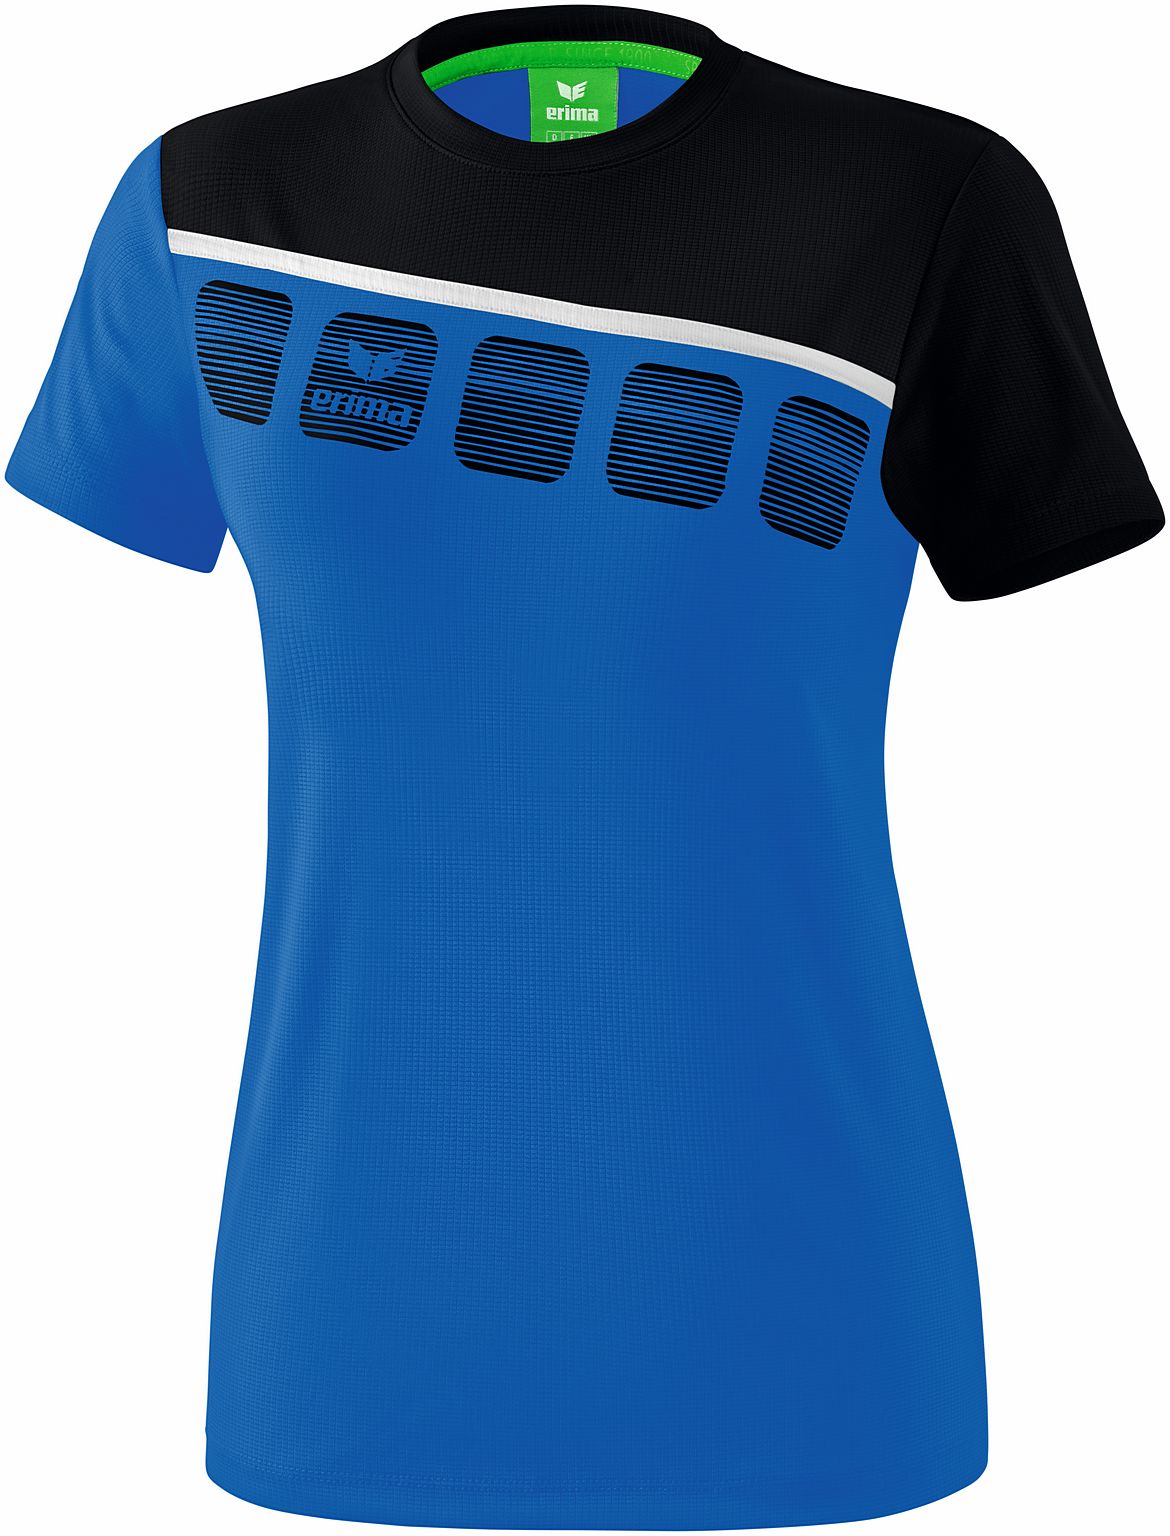 Teamline 5-C T-shirt faconsyet damemodel